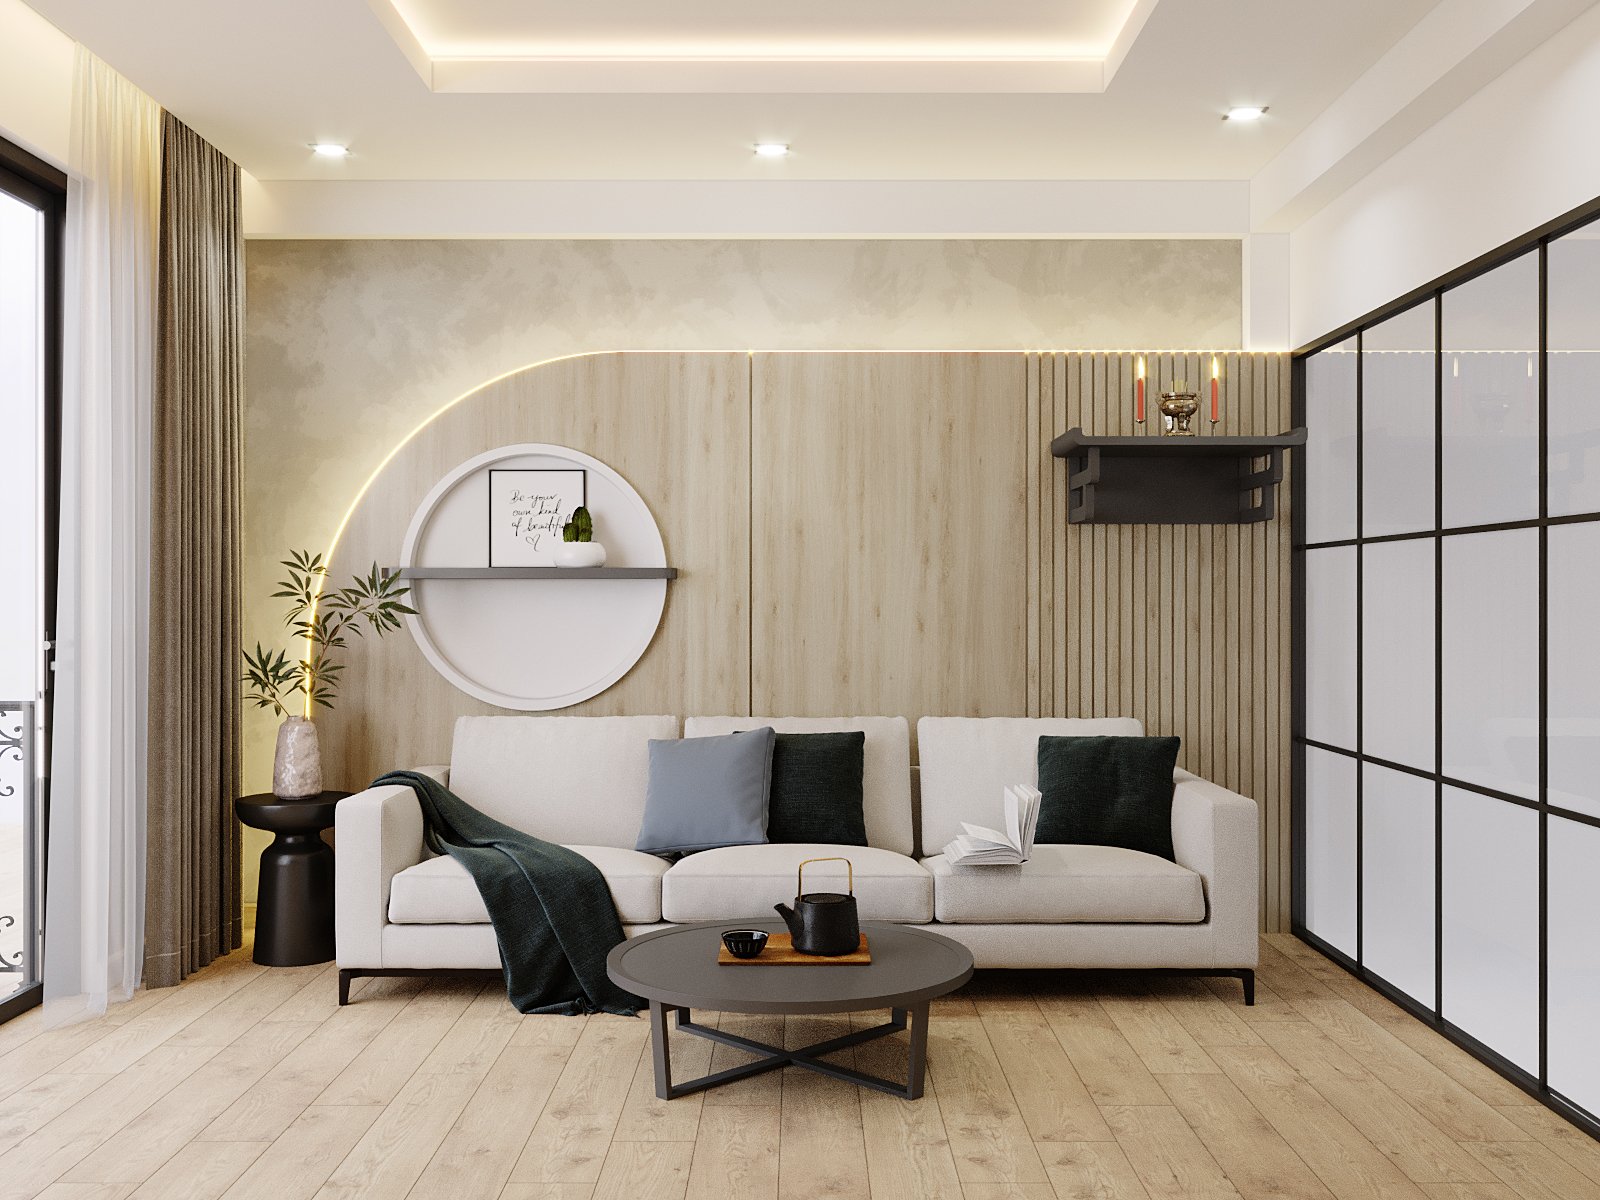 Thiết kế nội thất chung cư phong cách hiện đại cho phòng khách